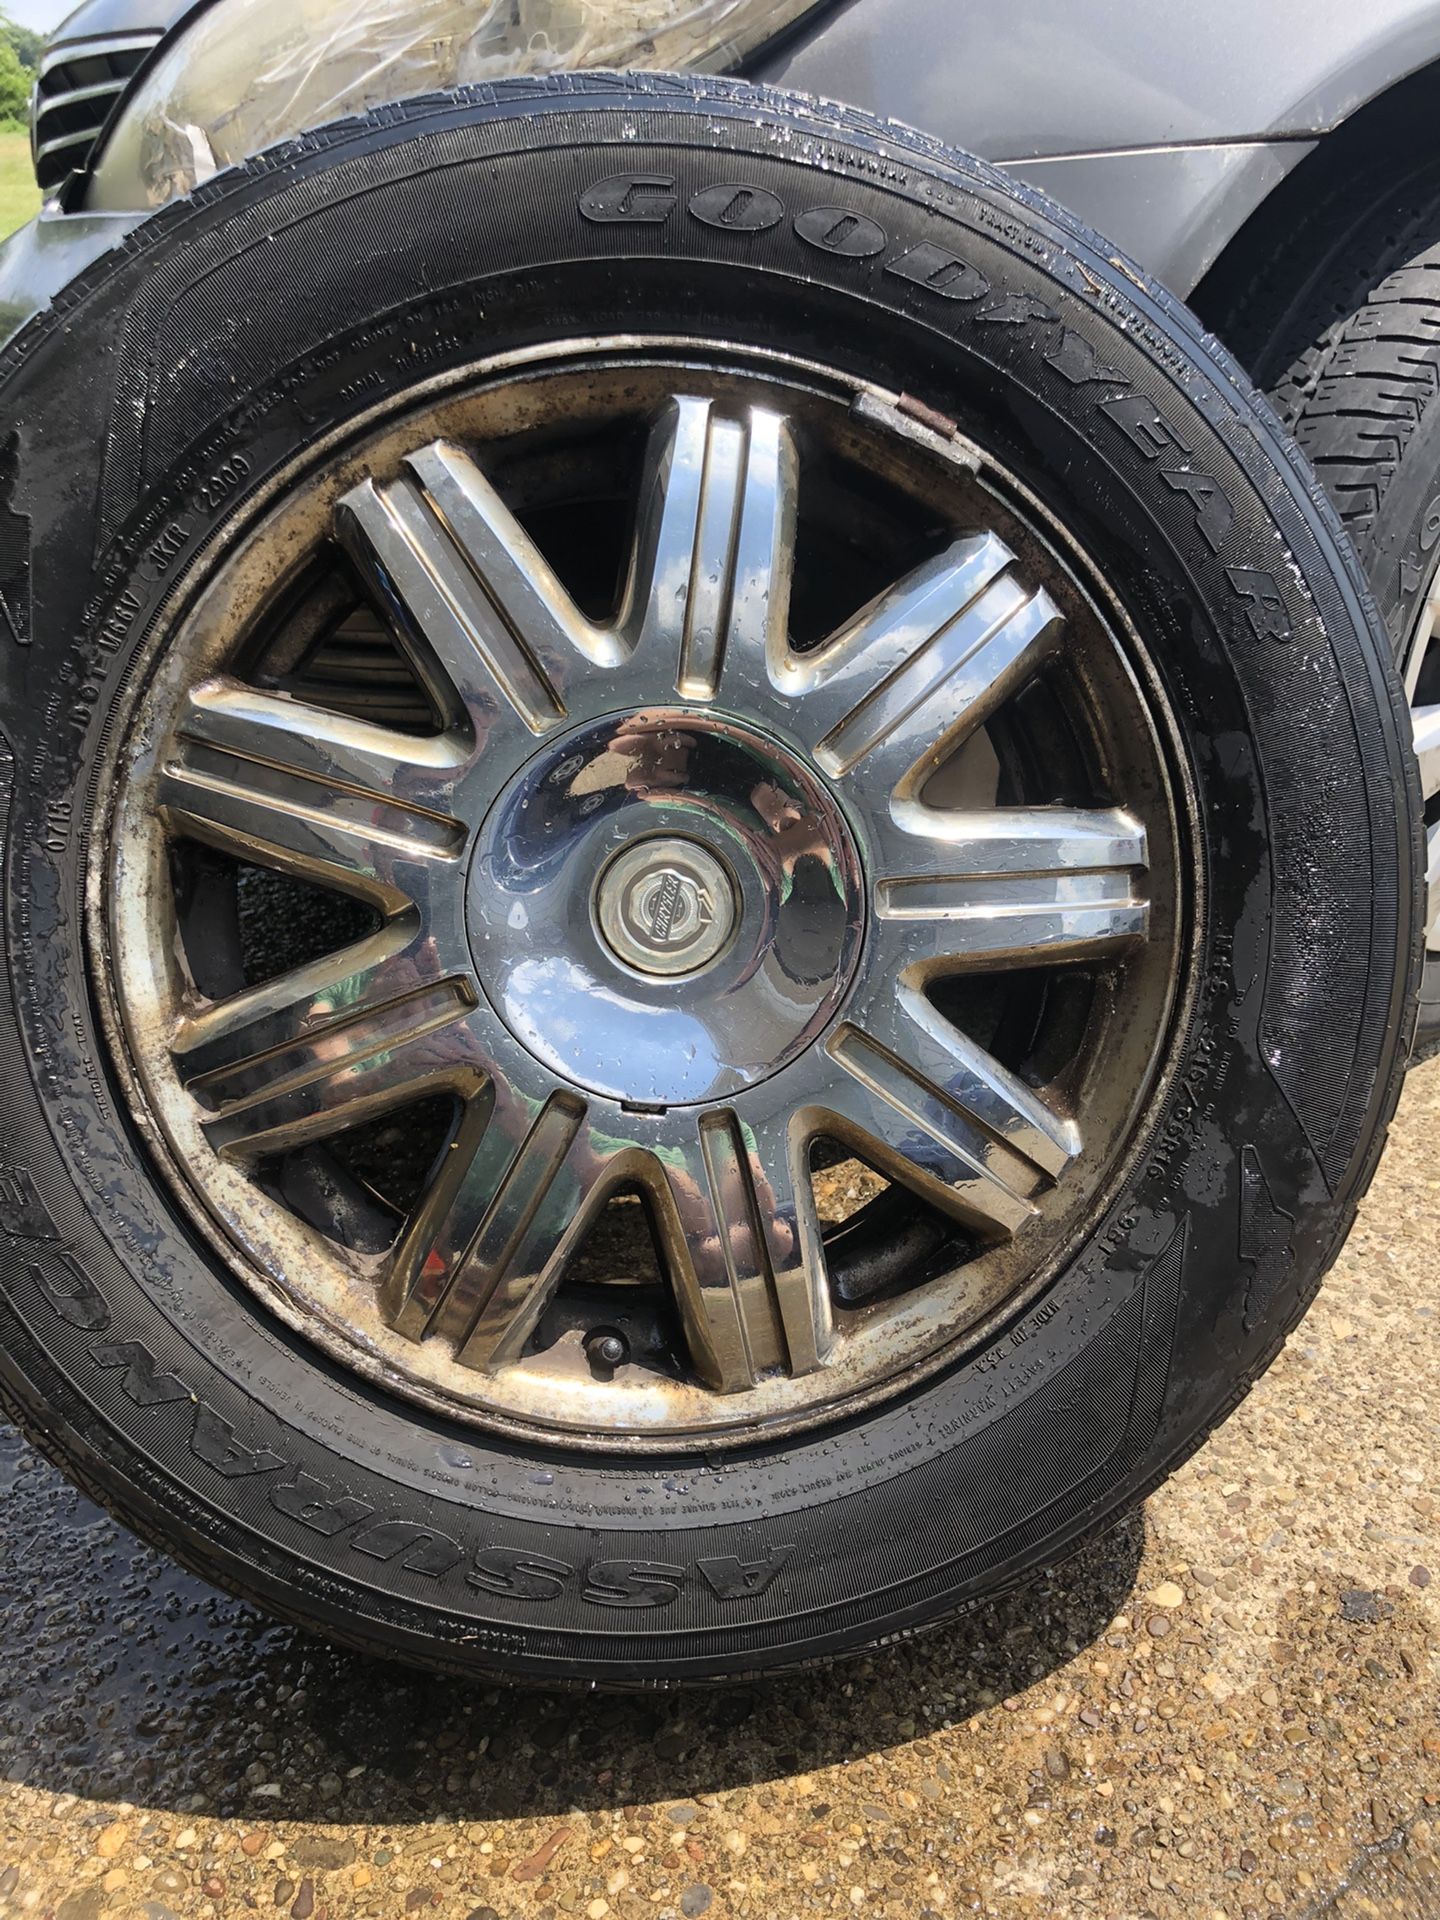 2 Chrysler Good Year Tires